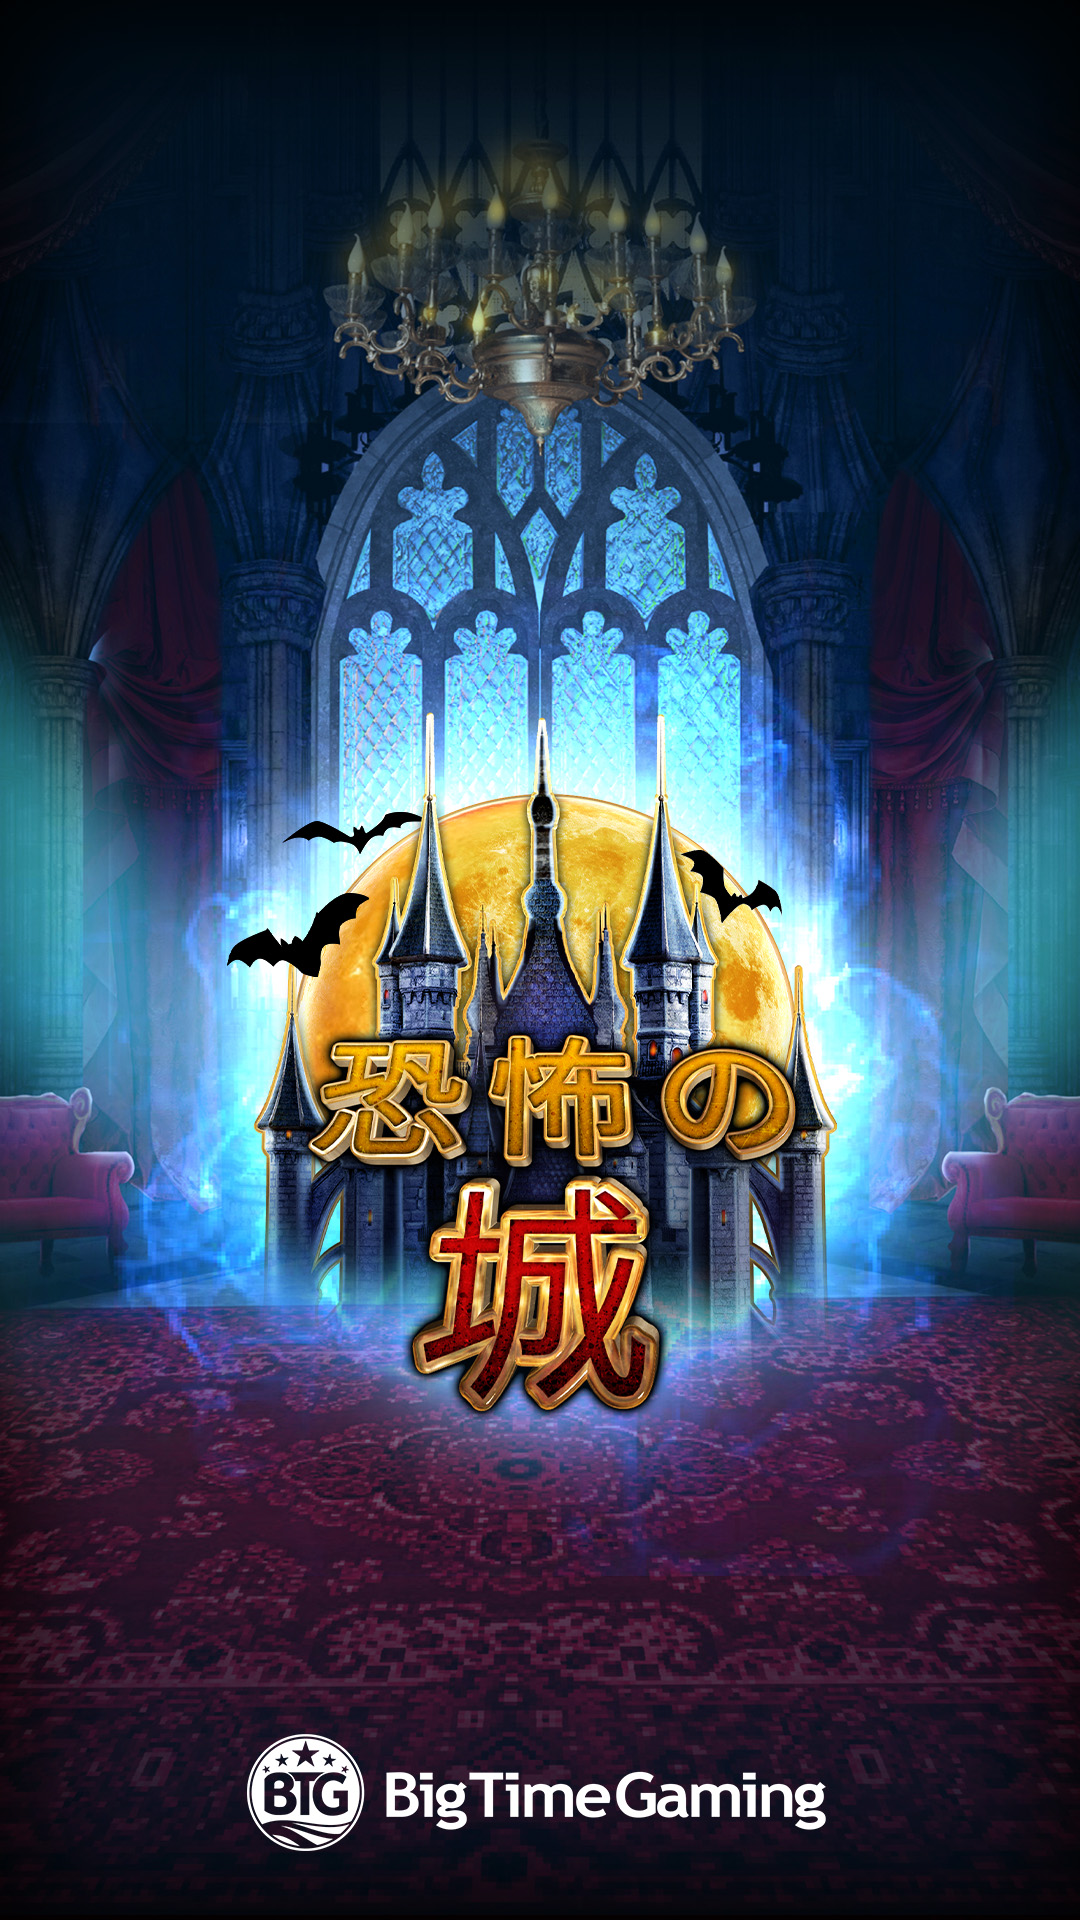 castle_of_terror_instagram_story_1080x1920_2022_06_01_jp.jpg thumbnail